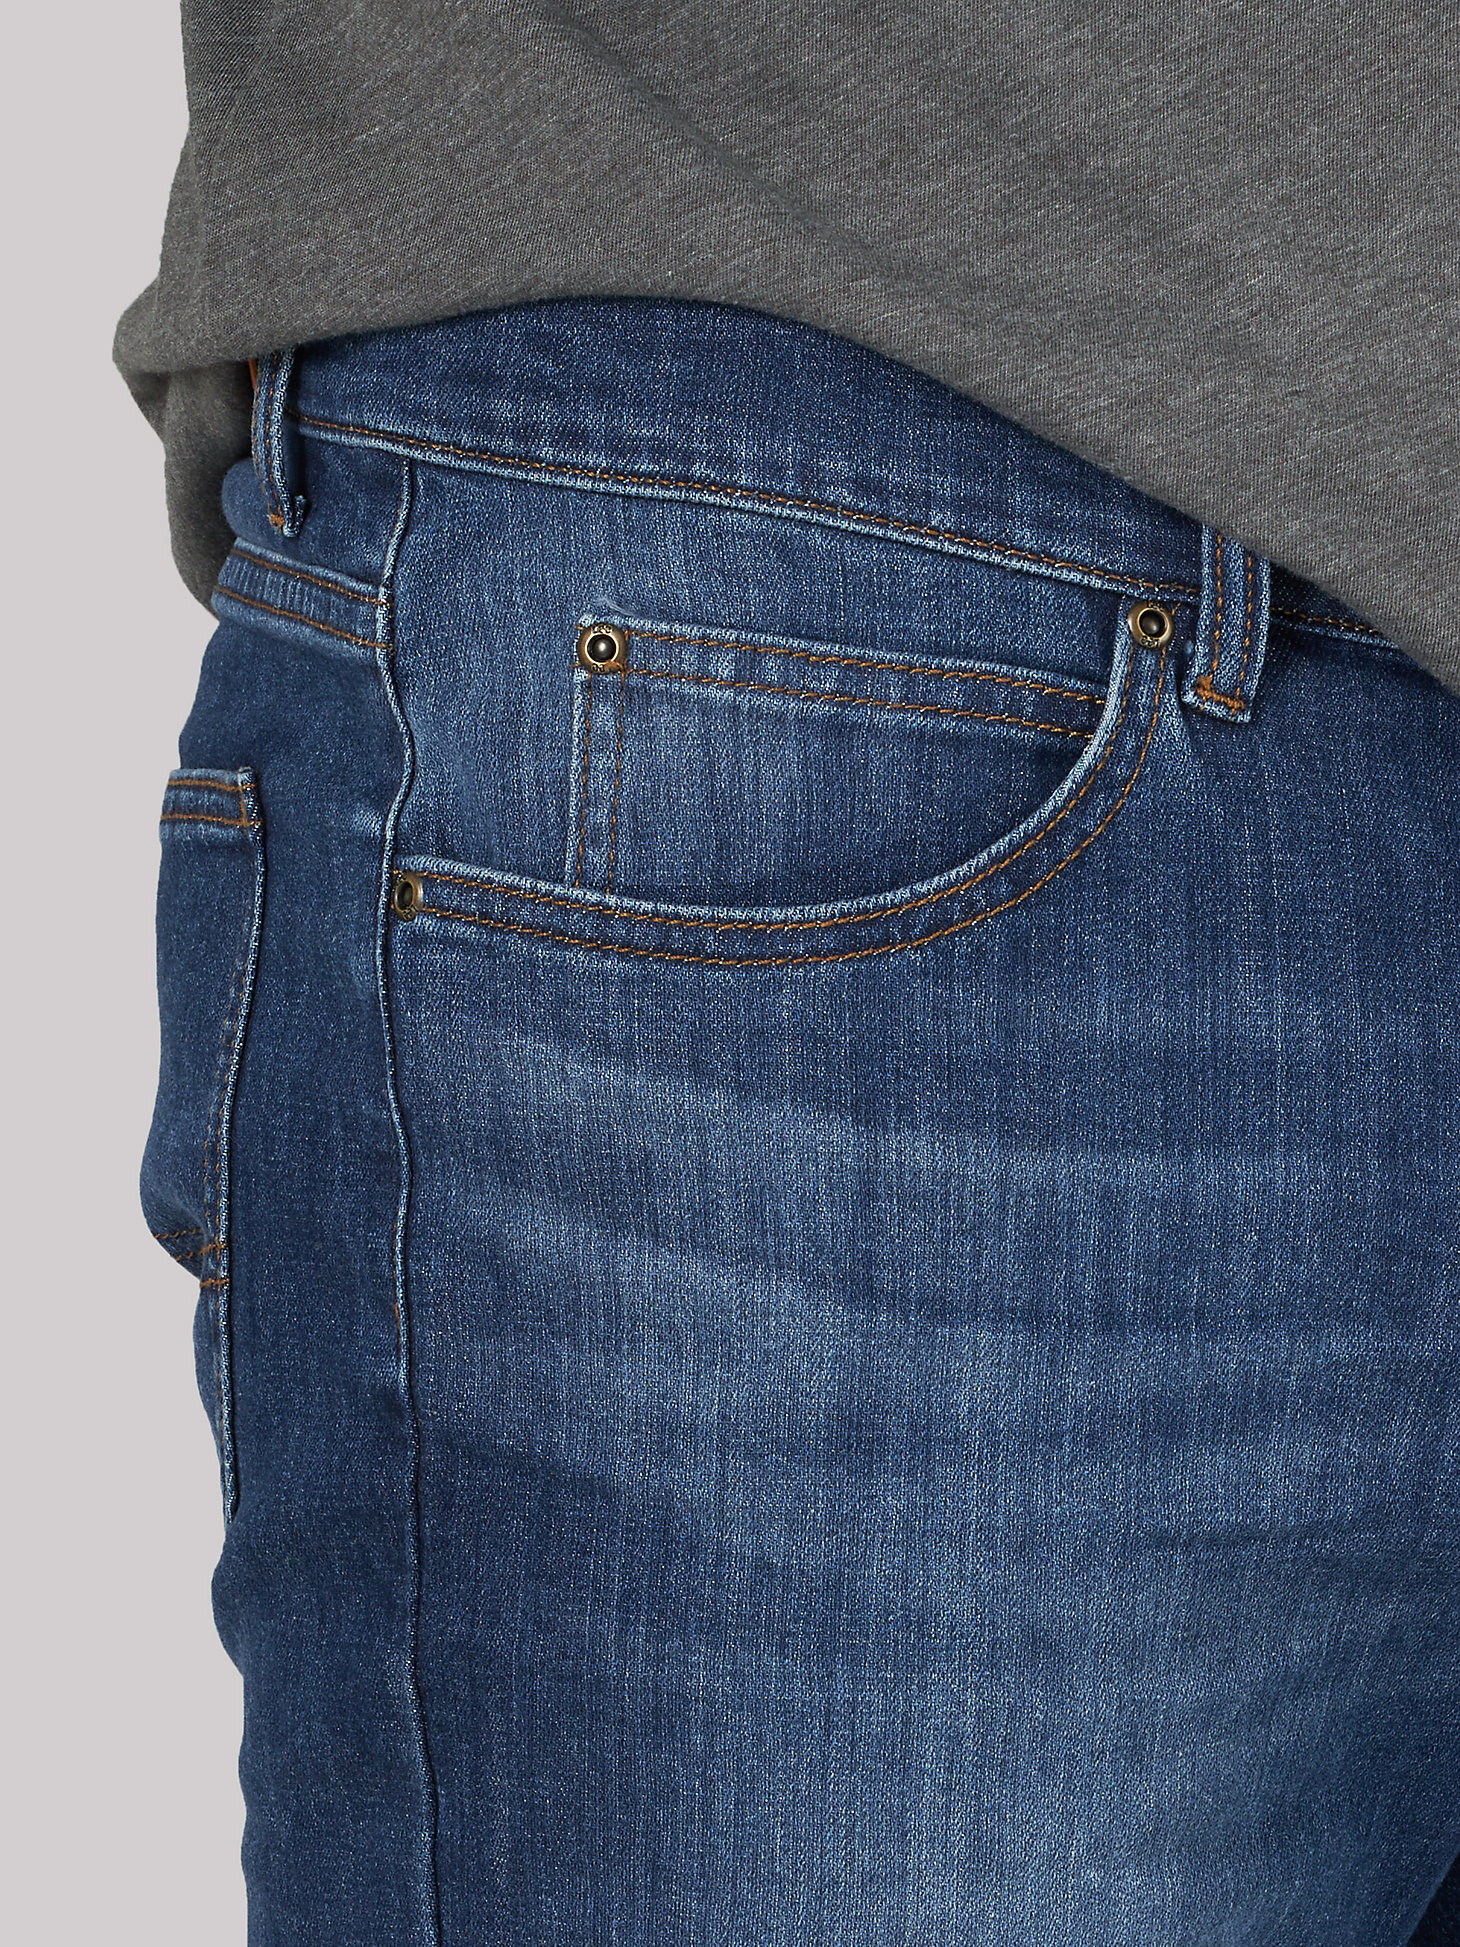 Men's Legendary Regular Fit 5-Pocket Short in Havoc alternative view 3